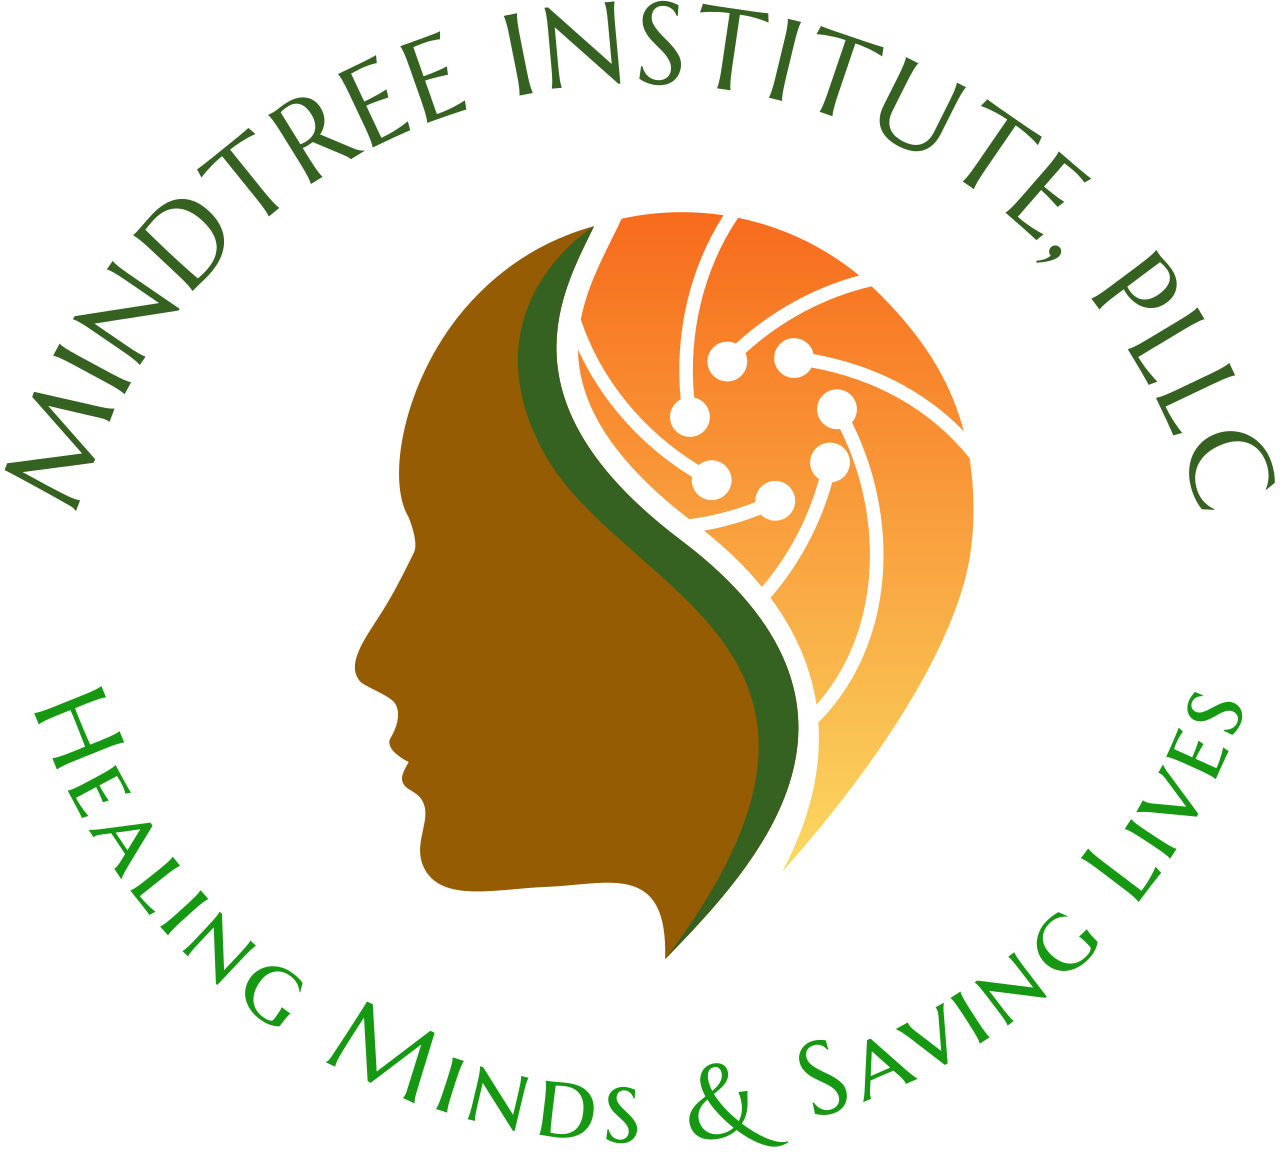 MINDTREE INSTITUTE, PLLC's logo